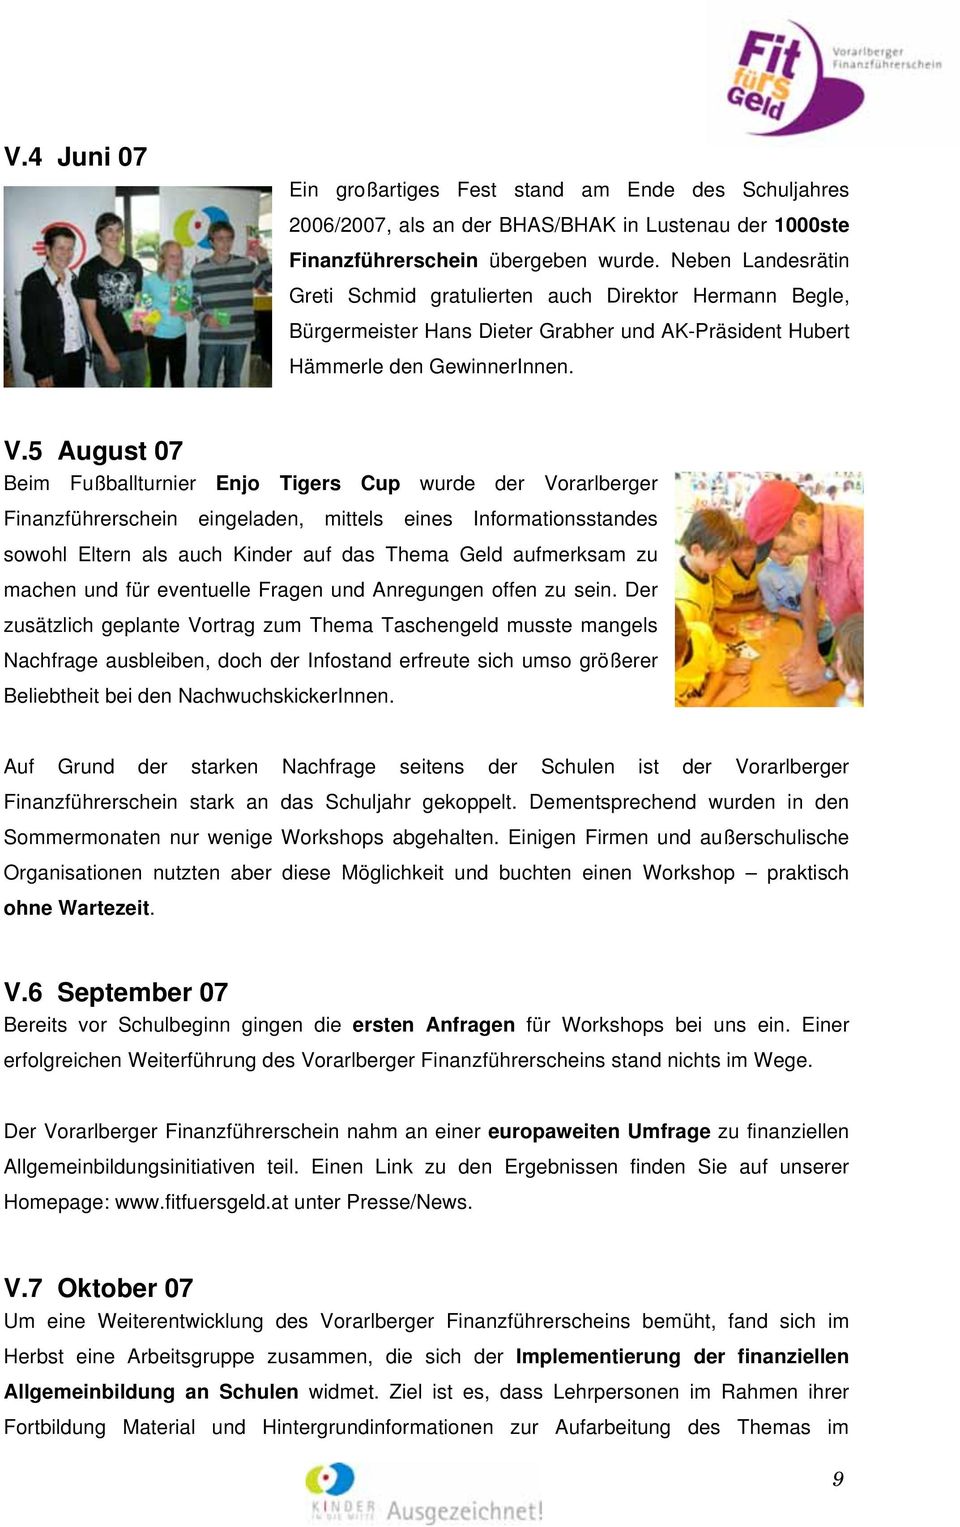 5 August 07 Beim Fußballturnier Enjo Tigers Cup wurde der Vorarlberger Finanzführerschein eingeladen, mittels eines Informationsstandes sowohl Eltern als auch Kinder auf das Thema Geld aufmerksam zu